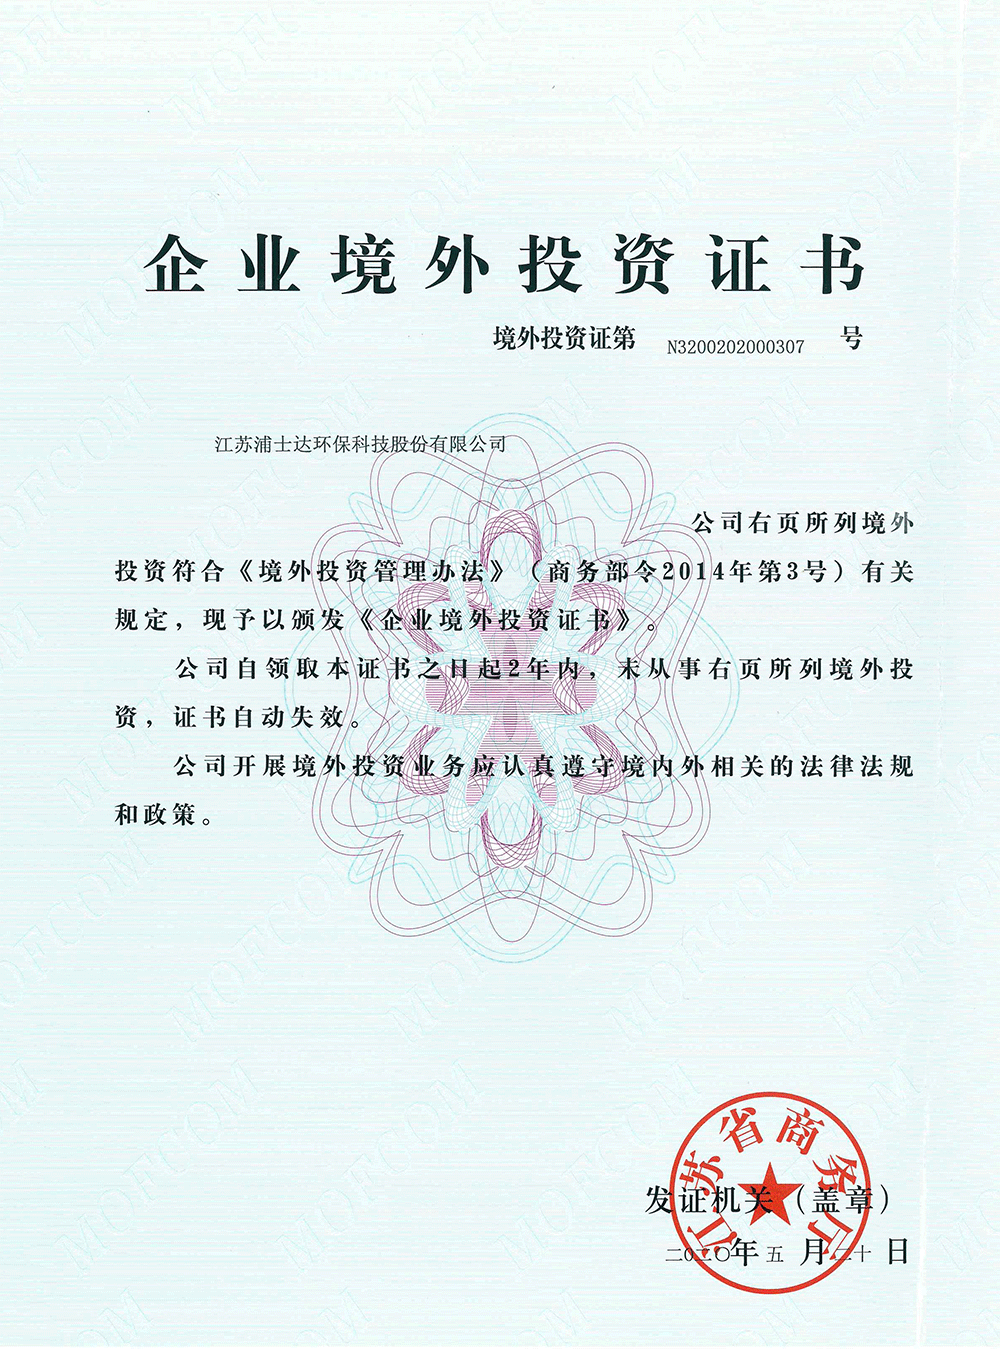 浦士达(股票代码:836440)正式获得企业境外投资证书